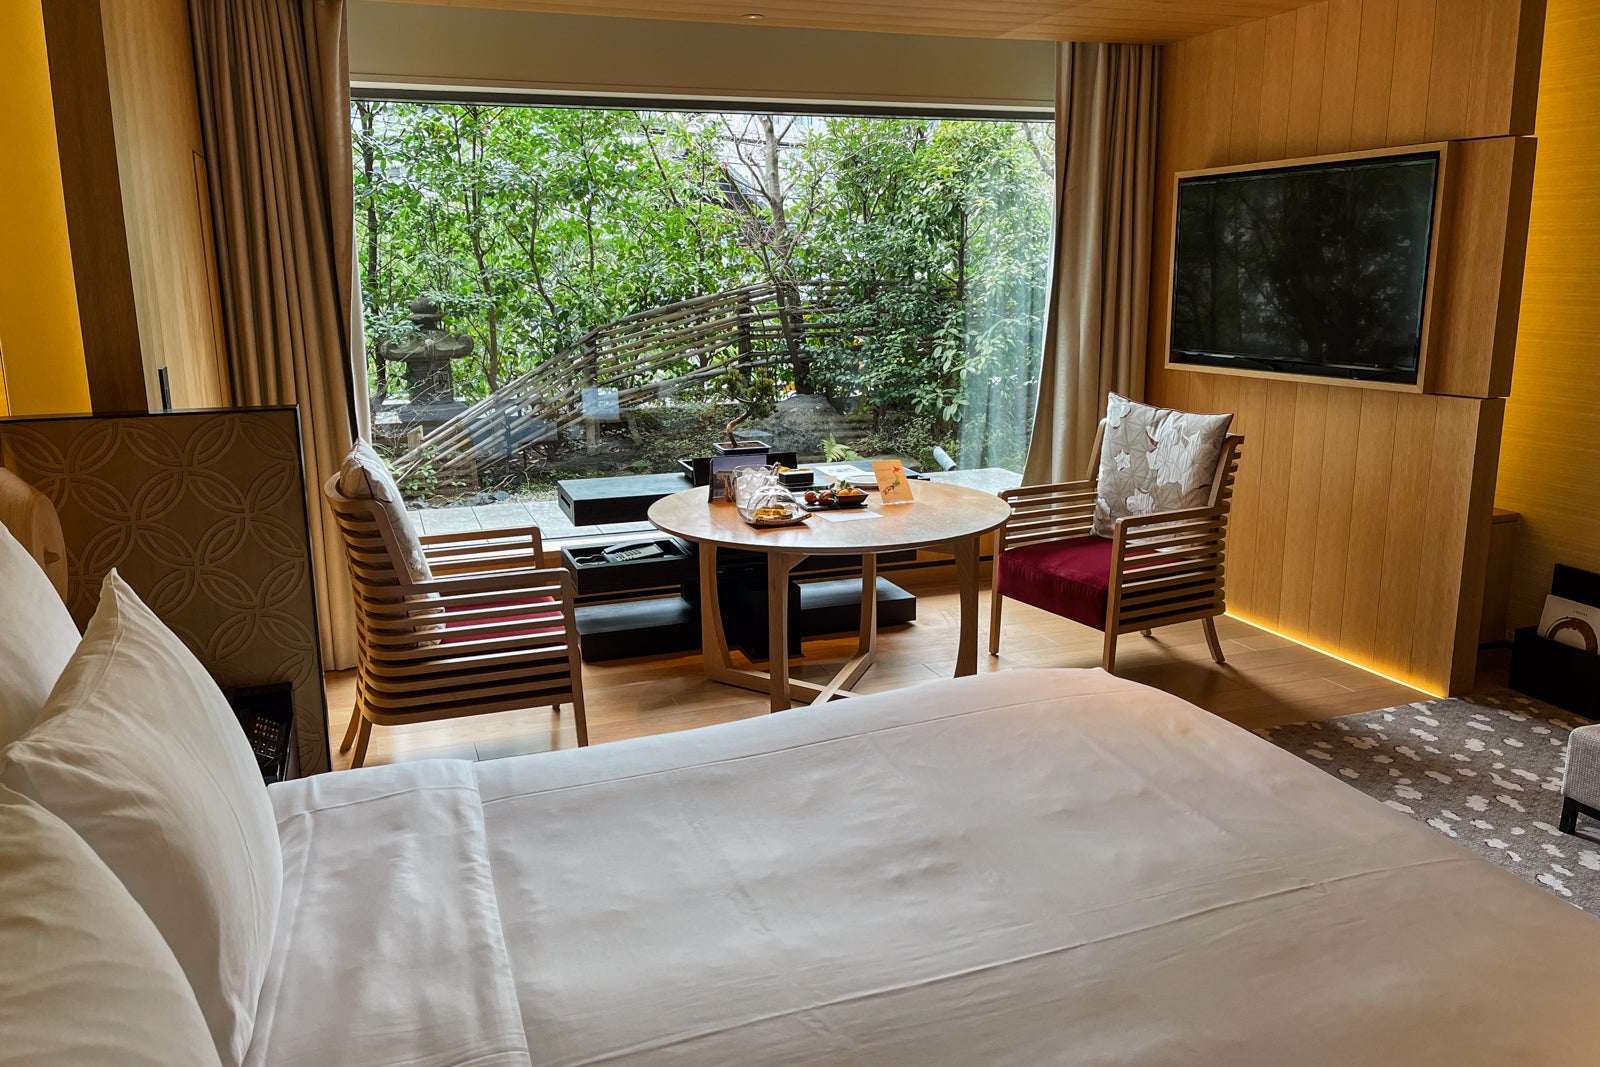 Garden-view room at The Ritz-Carlton, Kyoto